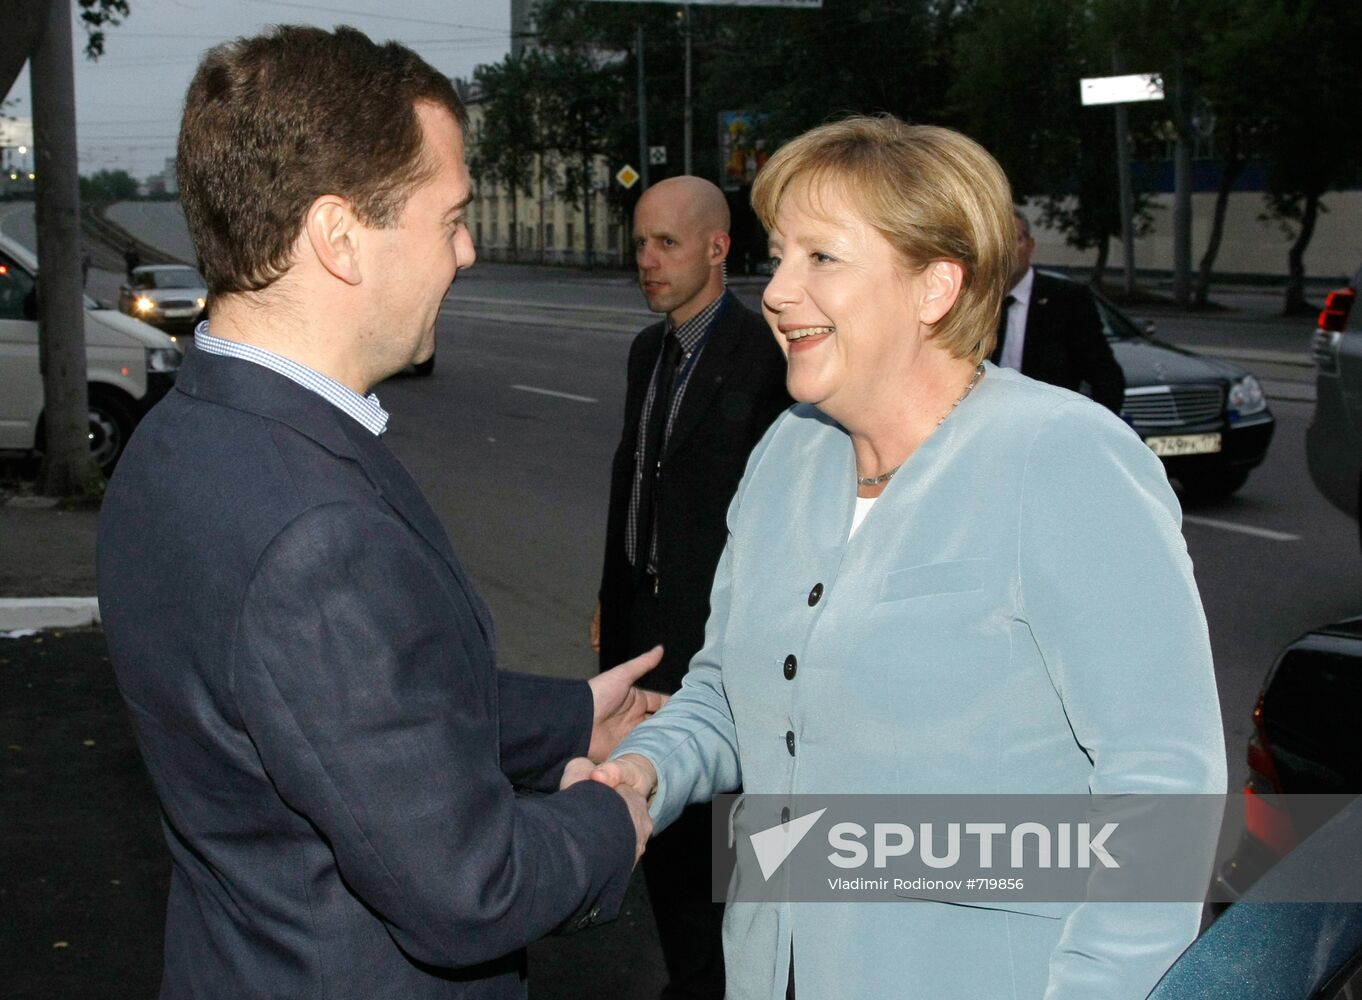 Dmitry Medvedev, Angela Merkel arrive in Yekaterinburg